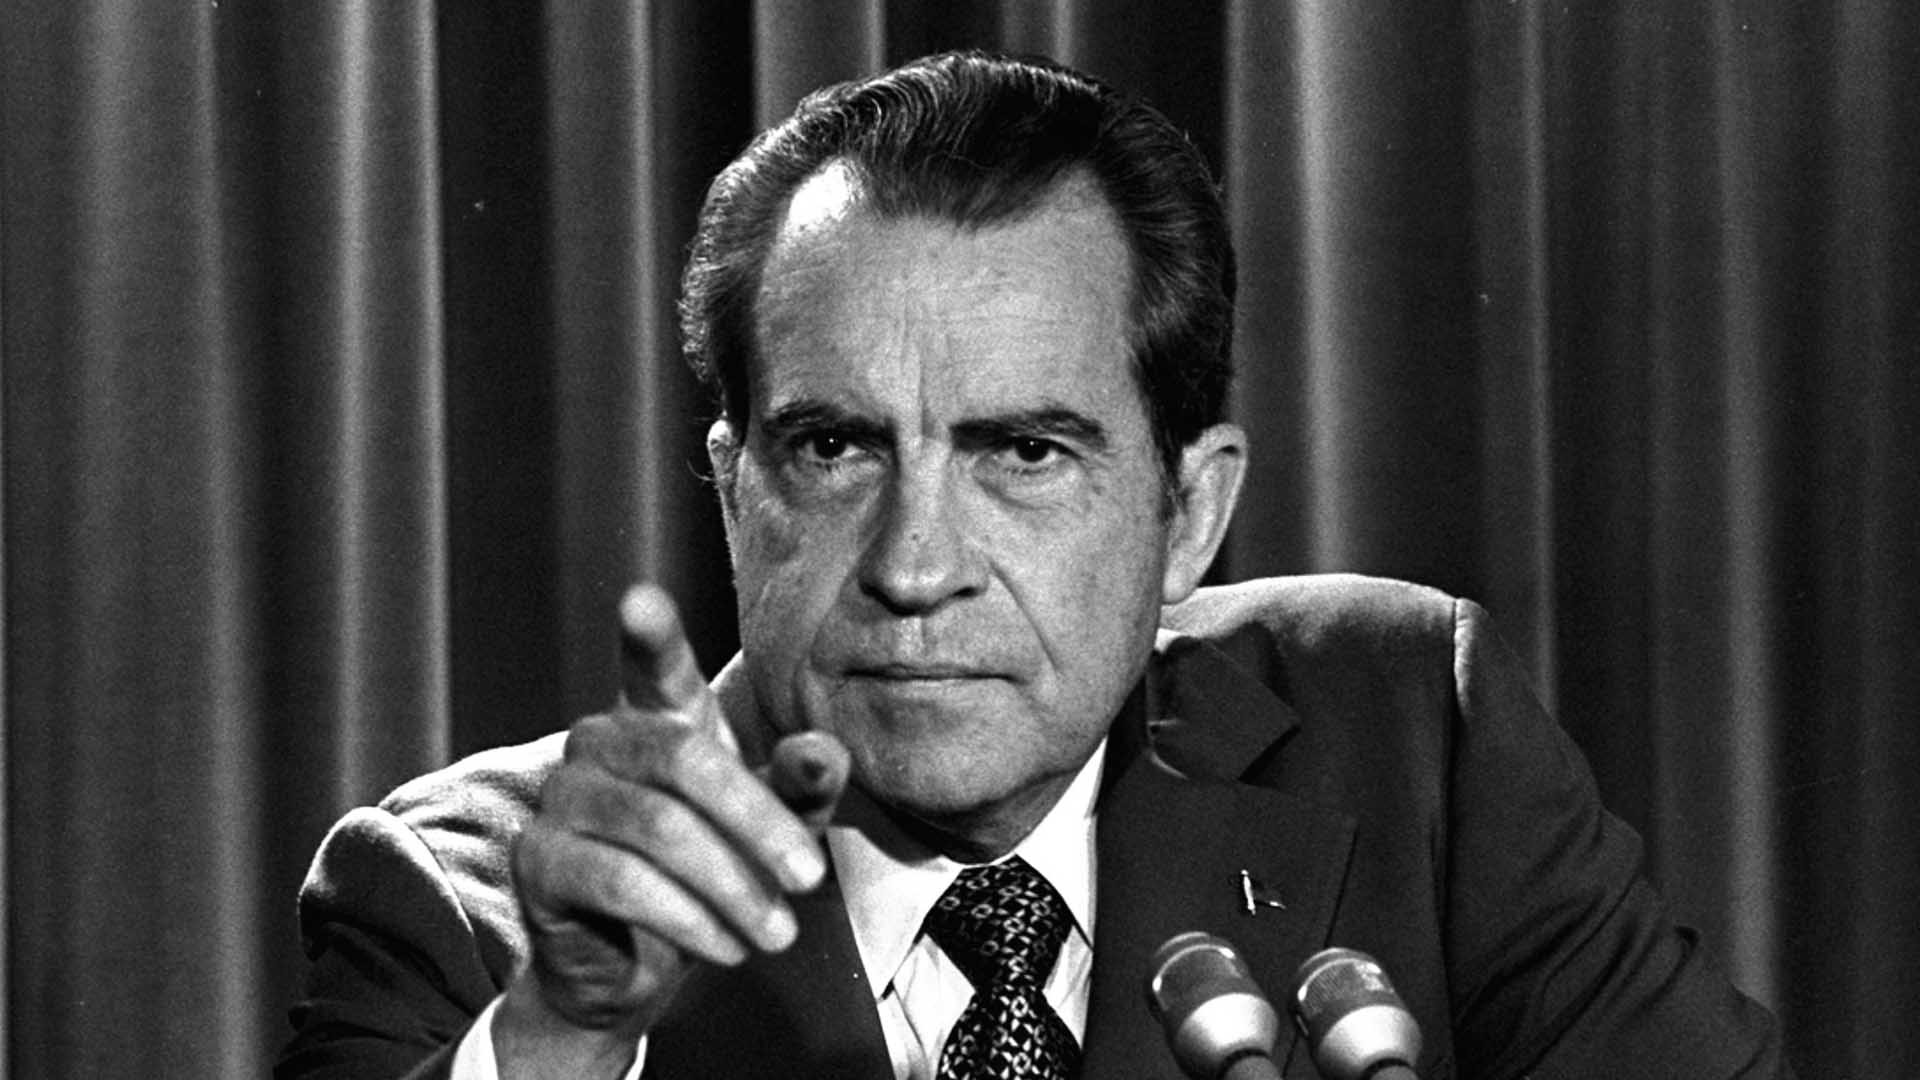 Trump vs. Nixon